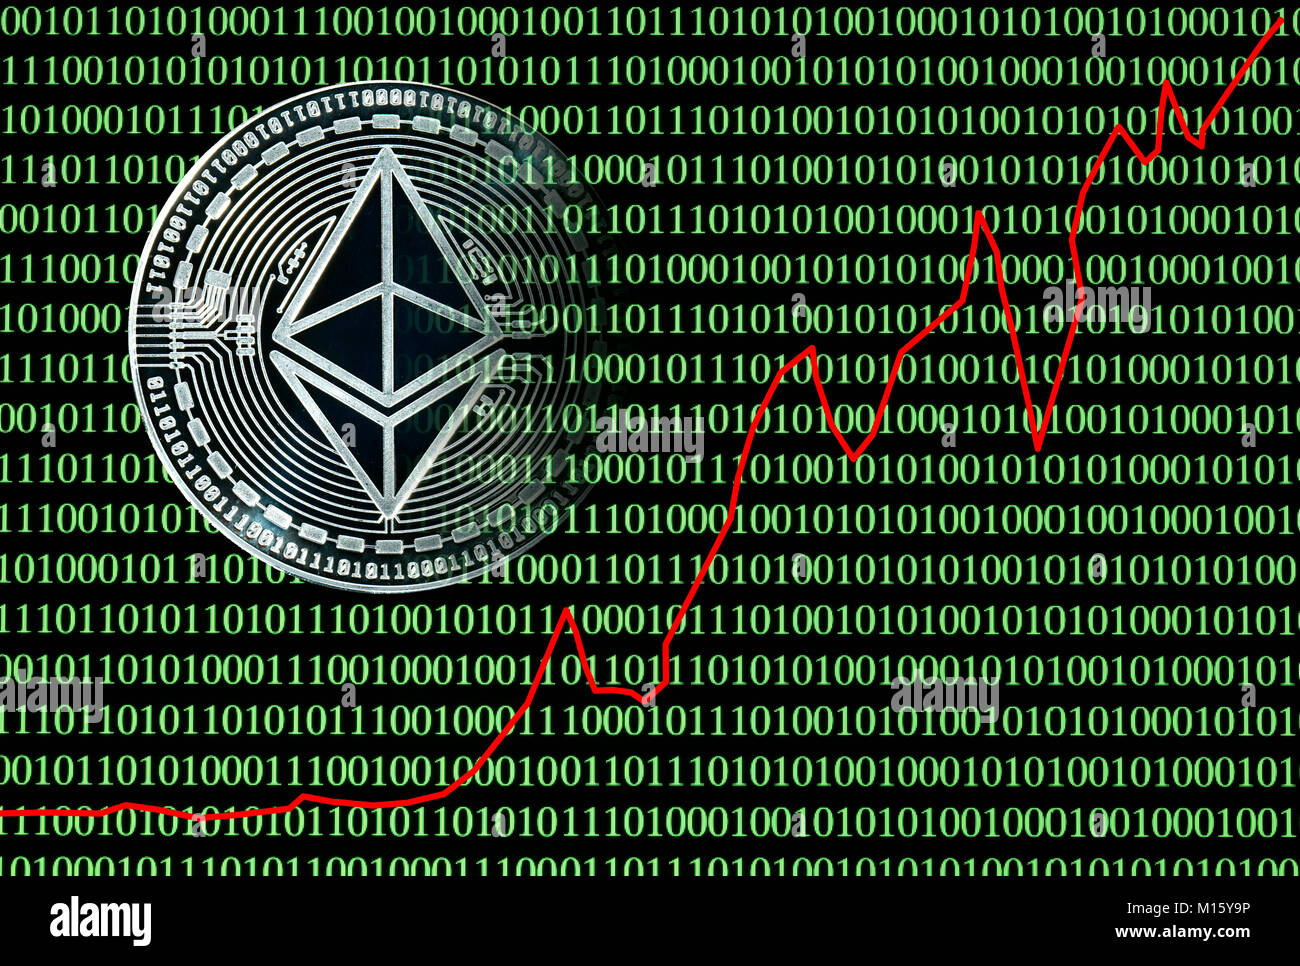 Immagine simbolo Cryptocurrency,valuta digitale,moneta d'argento Ethereum nella parte anteriore del digitale codice binario con prezzo di stock Foto Stock